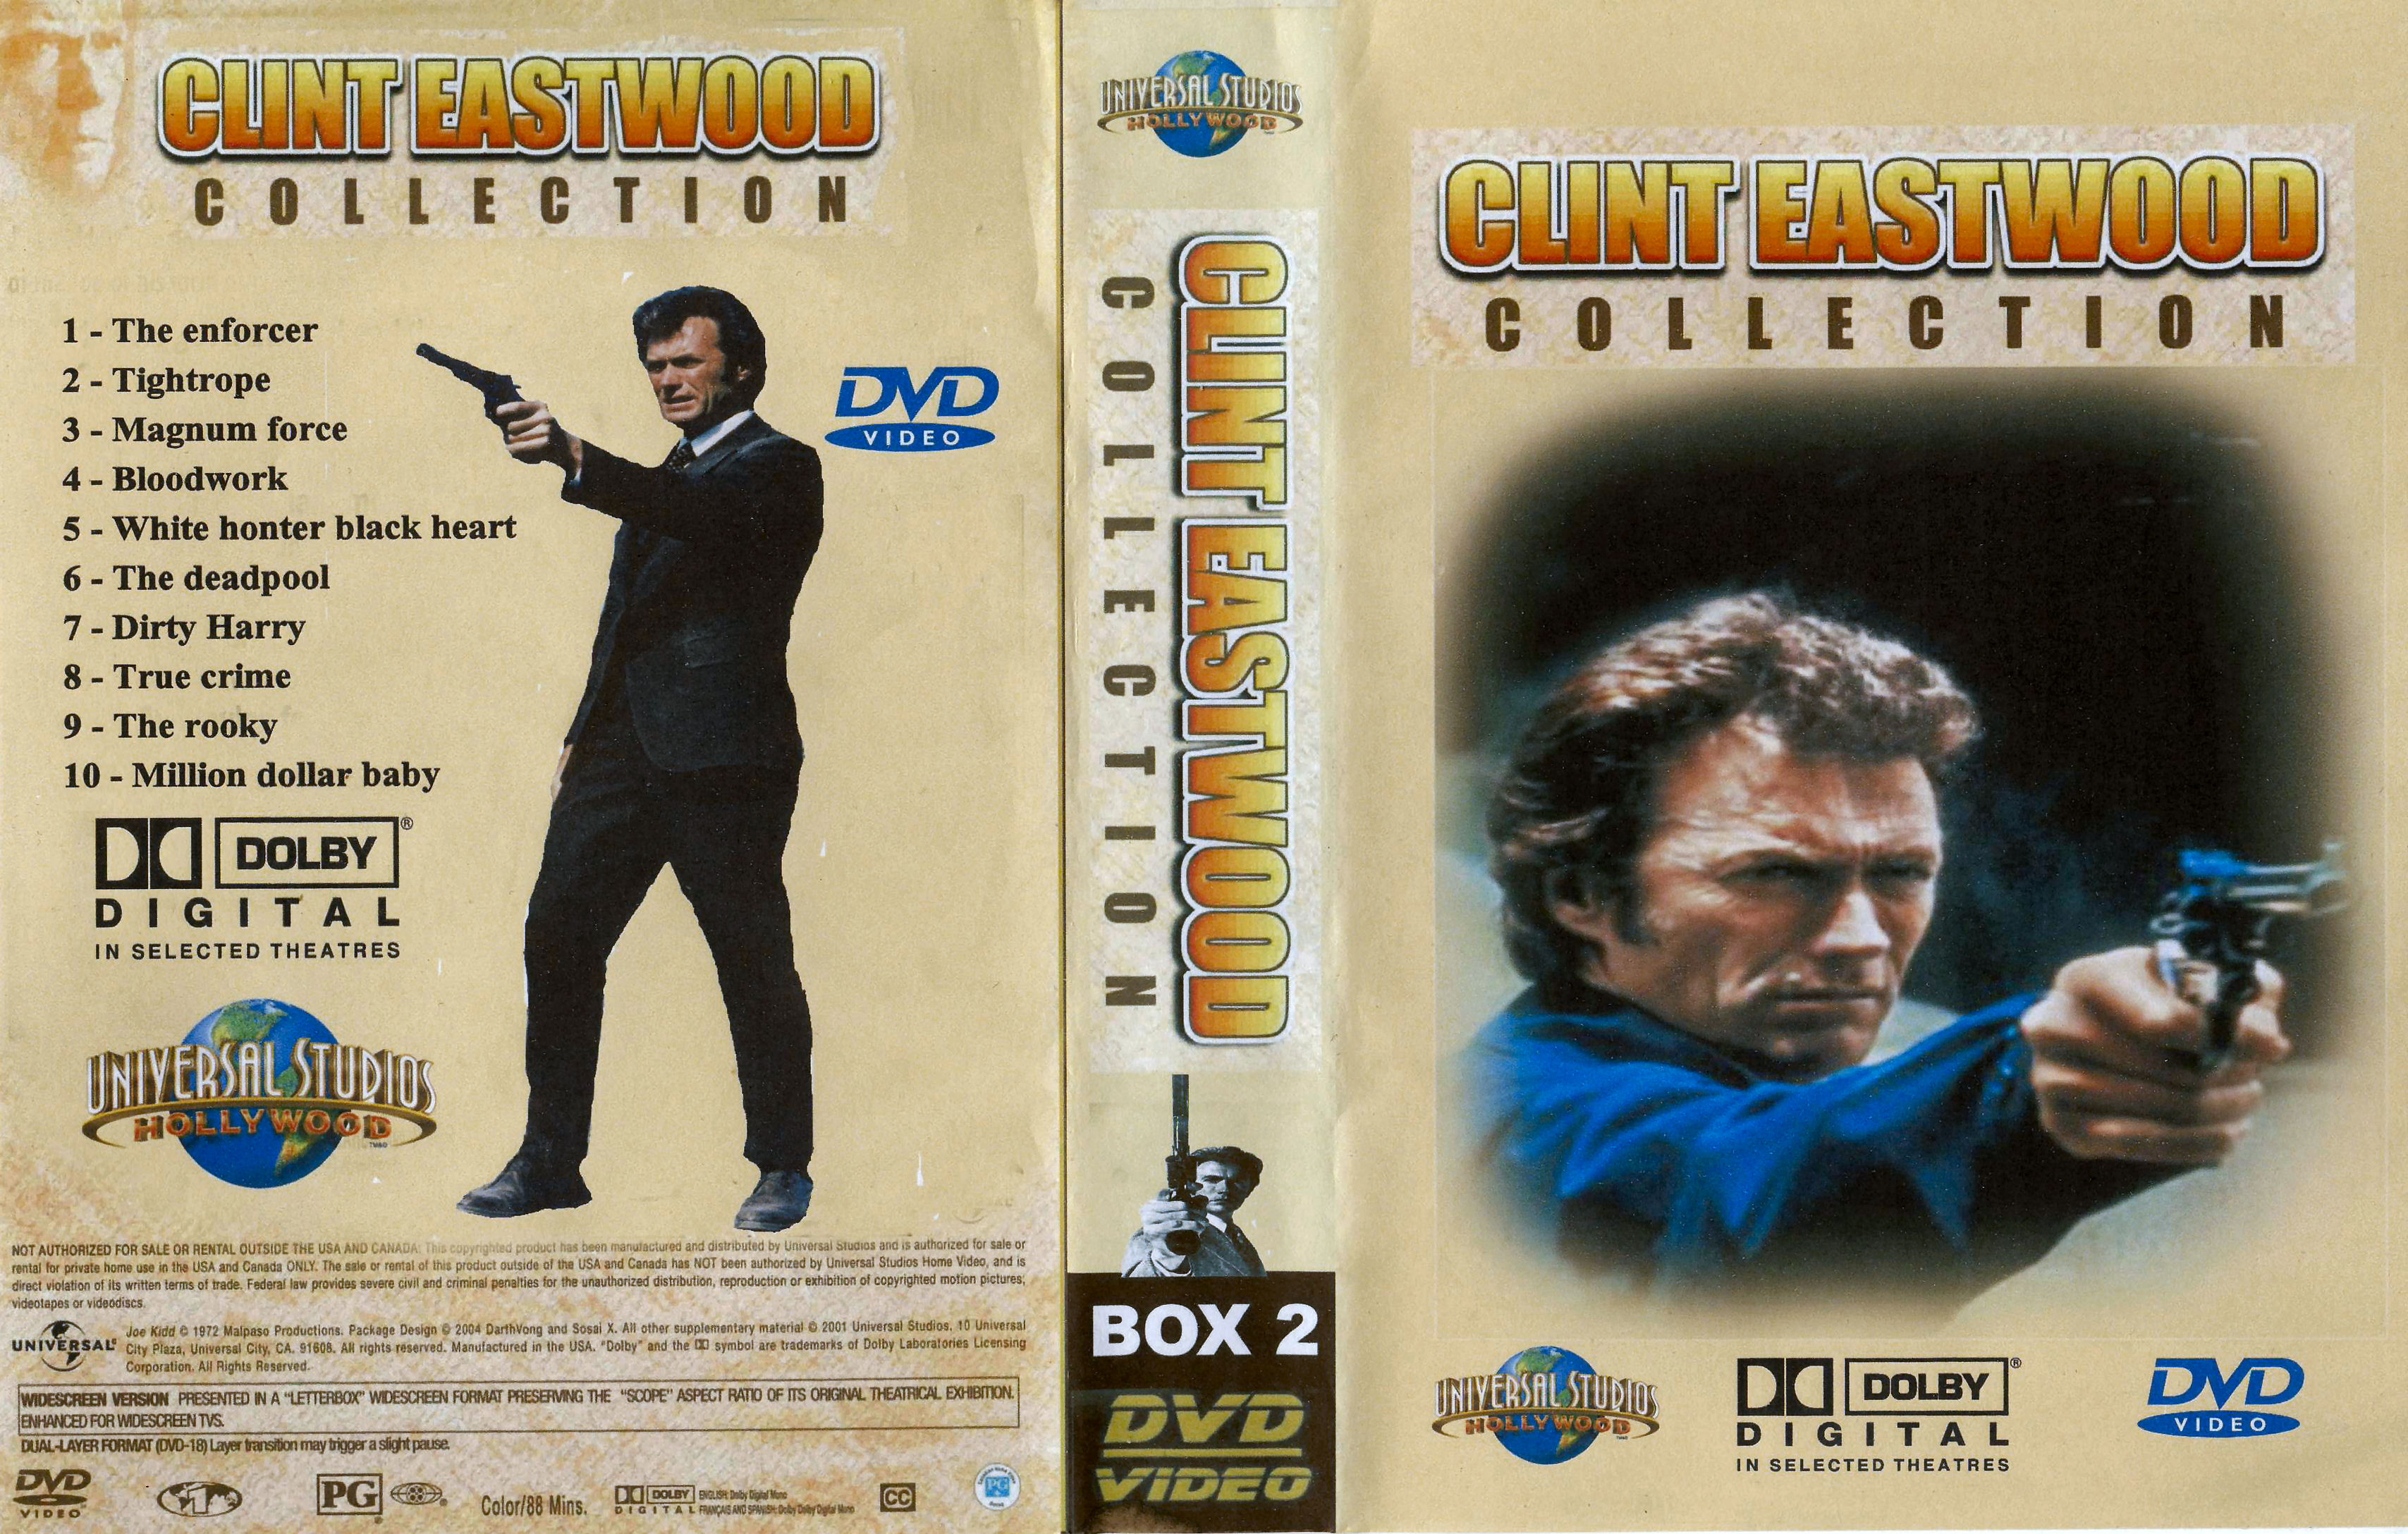 Clint Eastwood Collectie Box 2 DvD 6 van 10